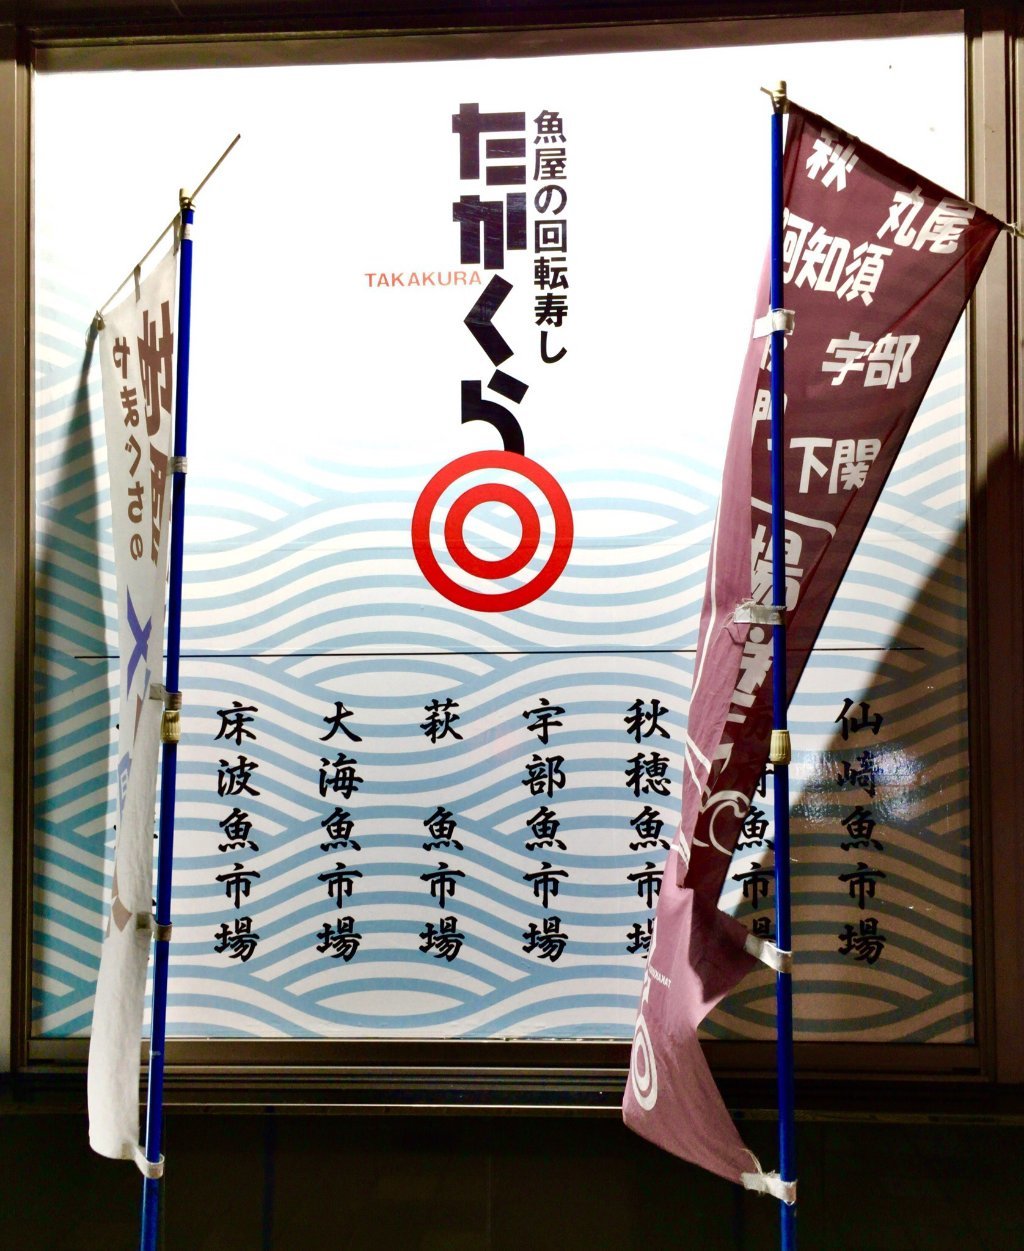 Sakanaya no Kaitenzushi Takakura